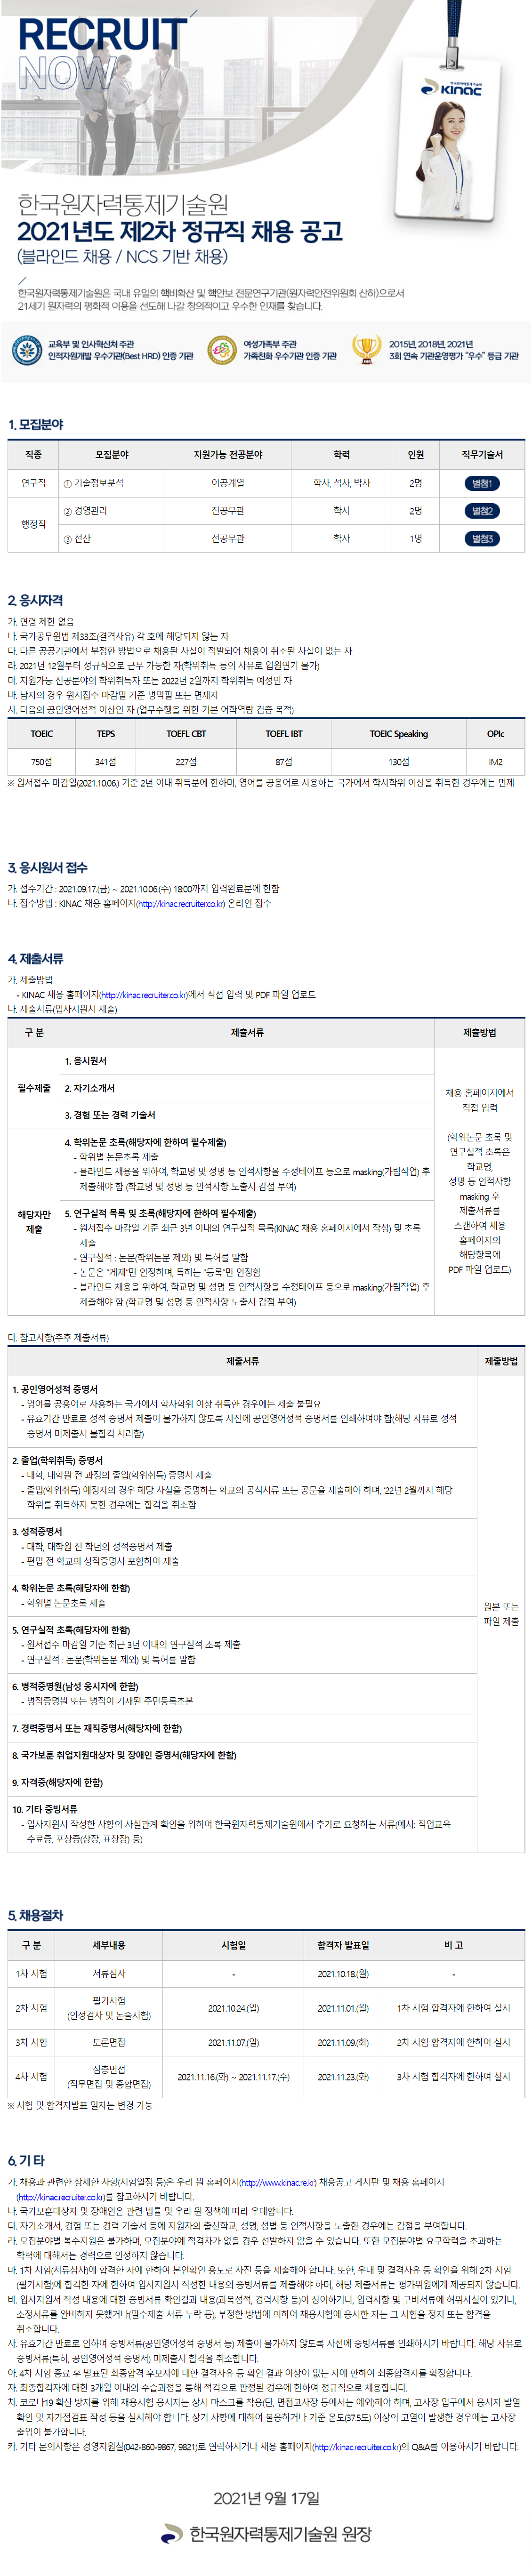 [한국원자력통제기술원] 2021년도 제2차 정규직 채용 공고(경영관리)